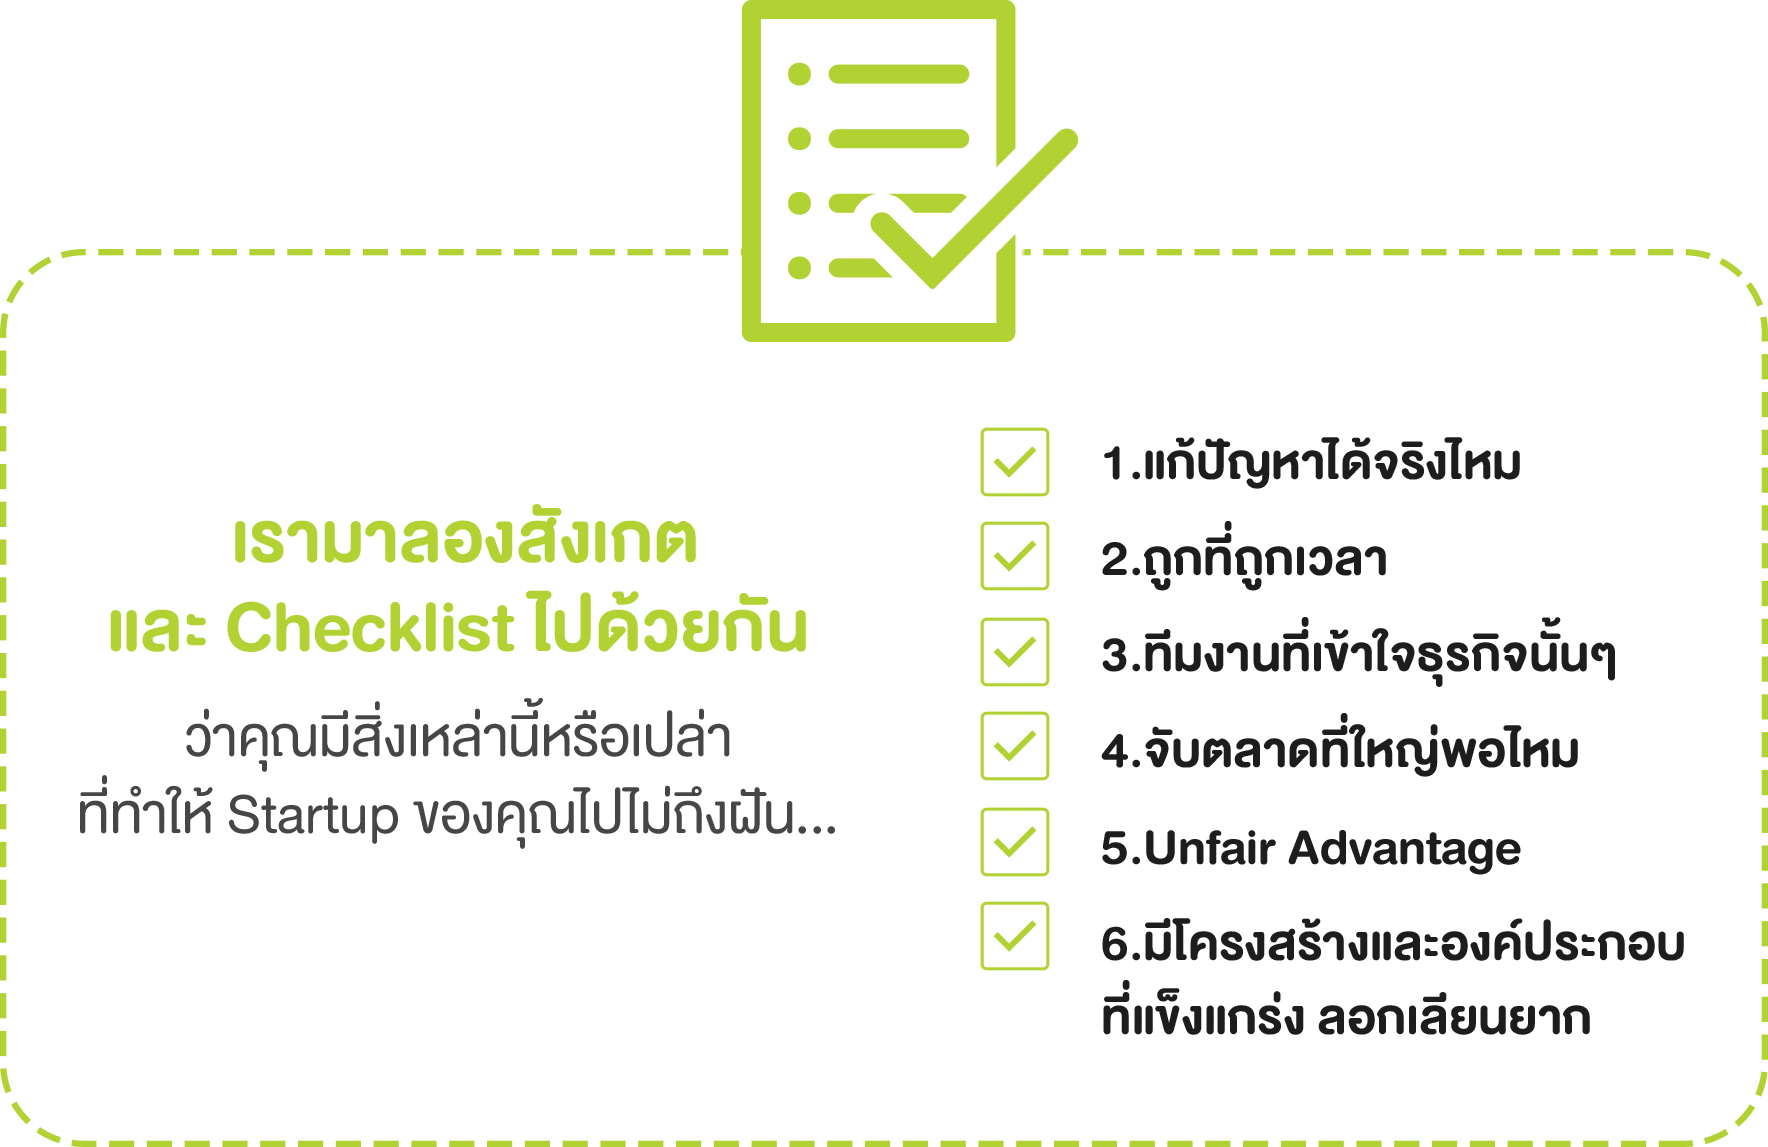 Checklist Startup Thailand